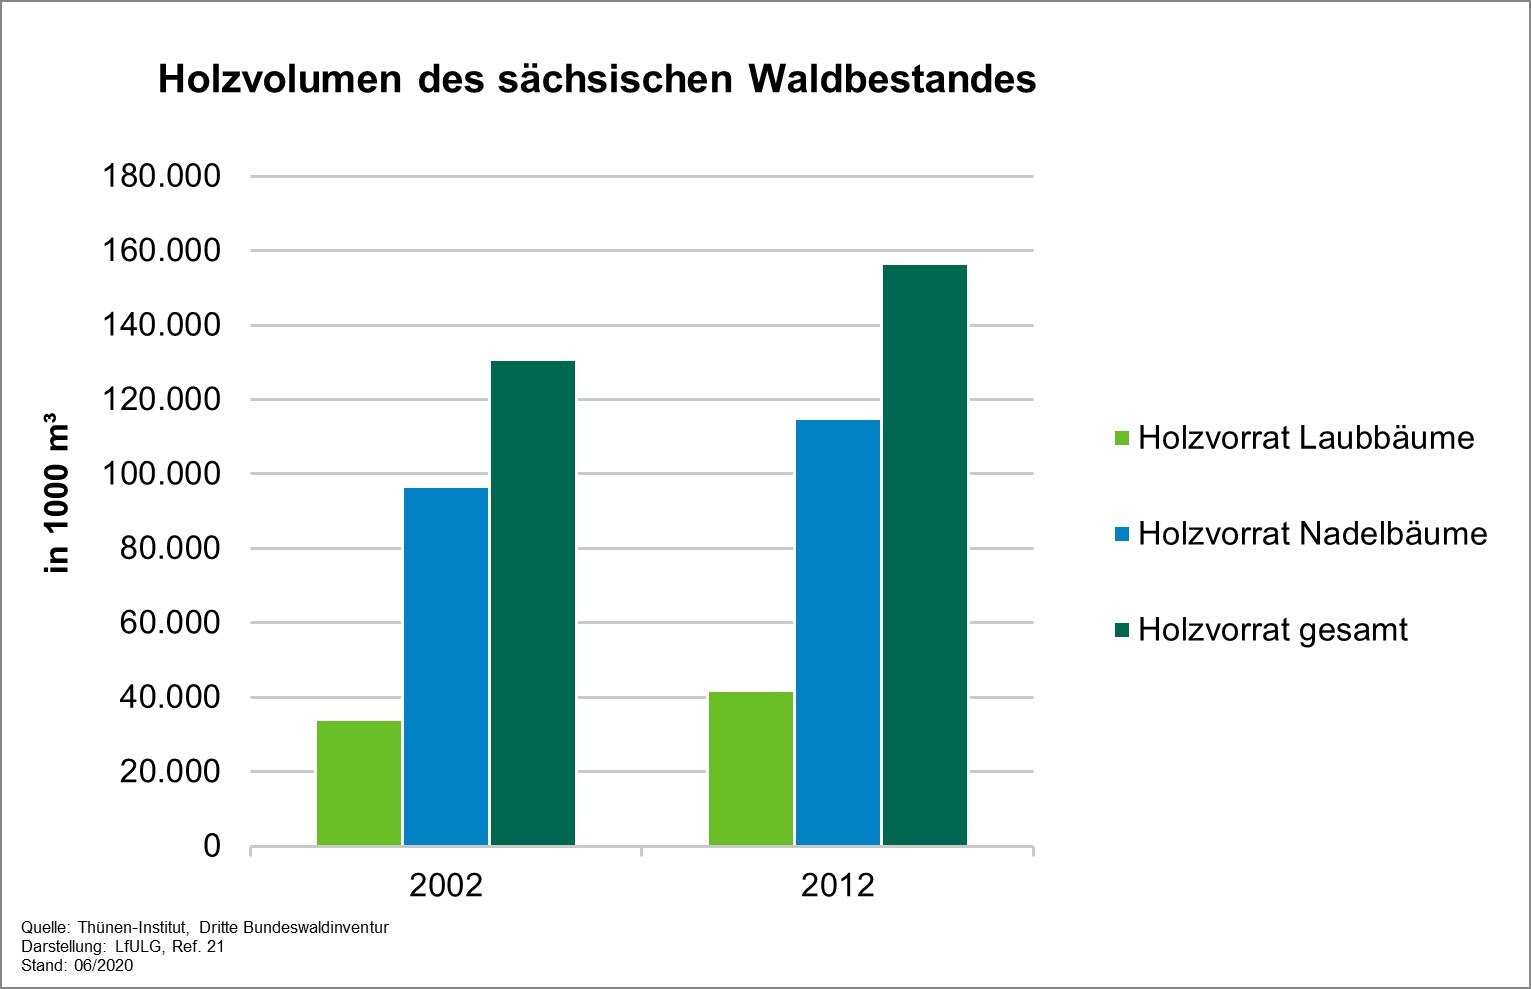 Die Grafik zeigt die Parameter des Indikators Holzvolumen des sächsischen Waldbestandes beziehungsweise des Holzvorrats für die Jahre 2002 und 2012. 